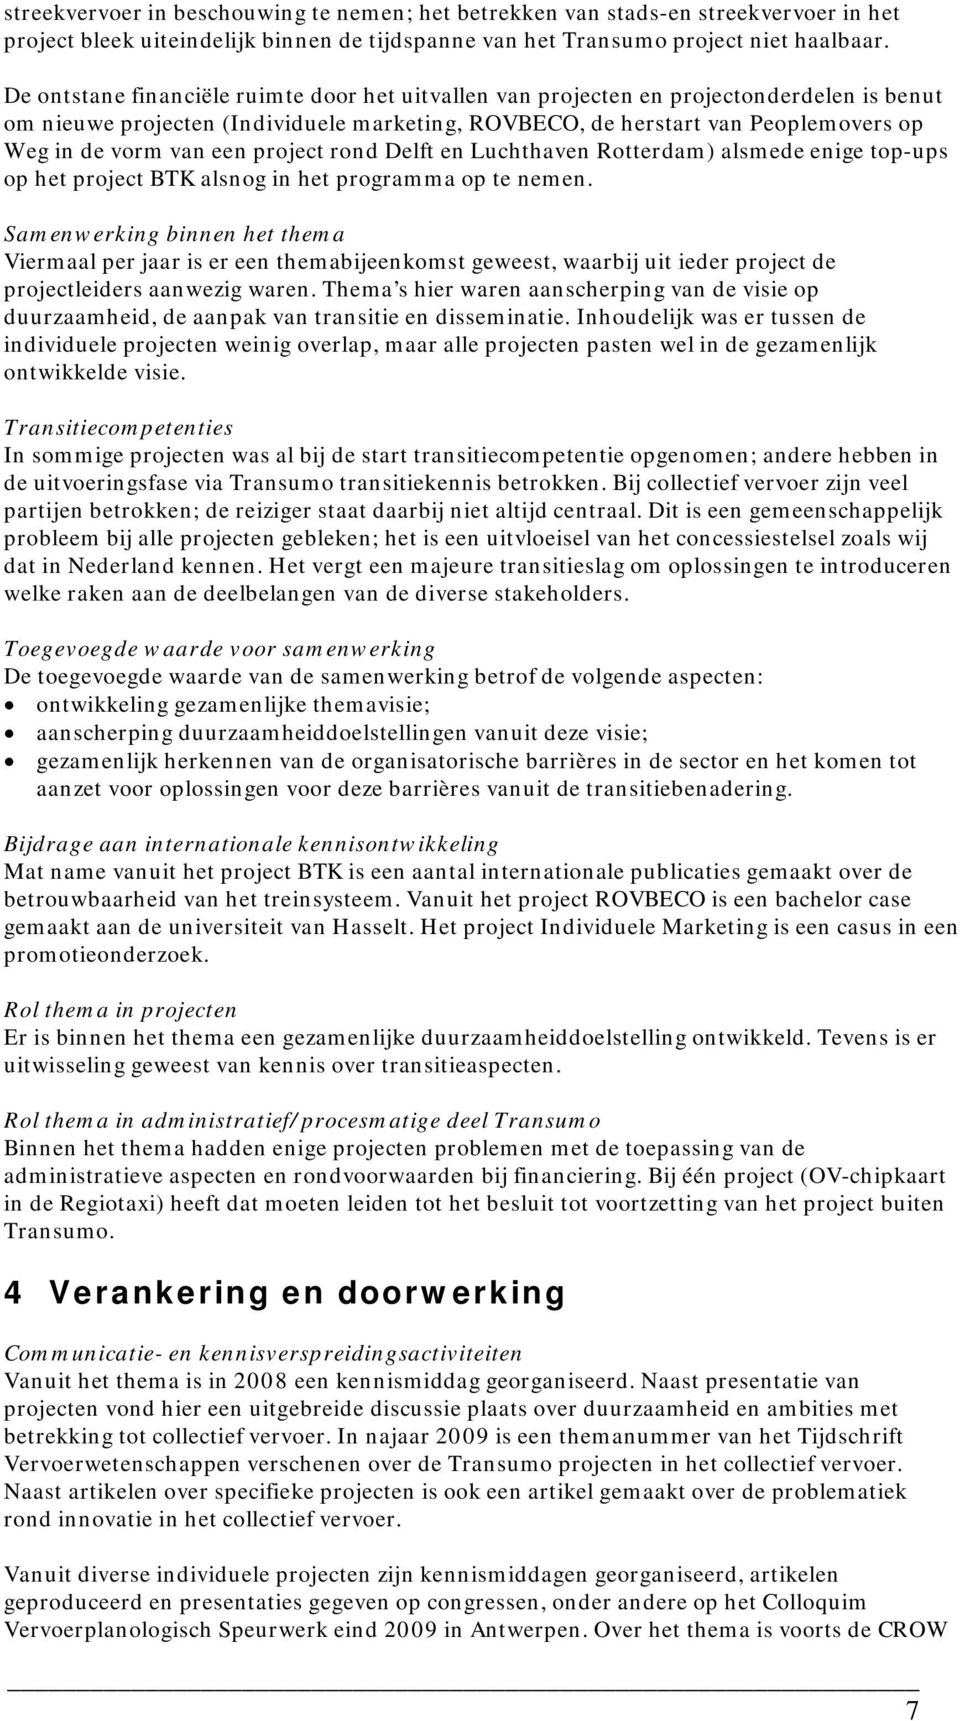 een project rond Delft en Luchthaven Rotterdam) alsmede enige top-ups op het project BTK alsnog in het programma op te nemen.